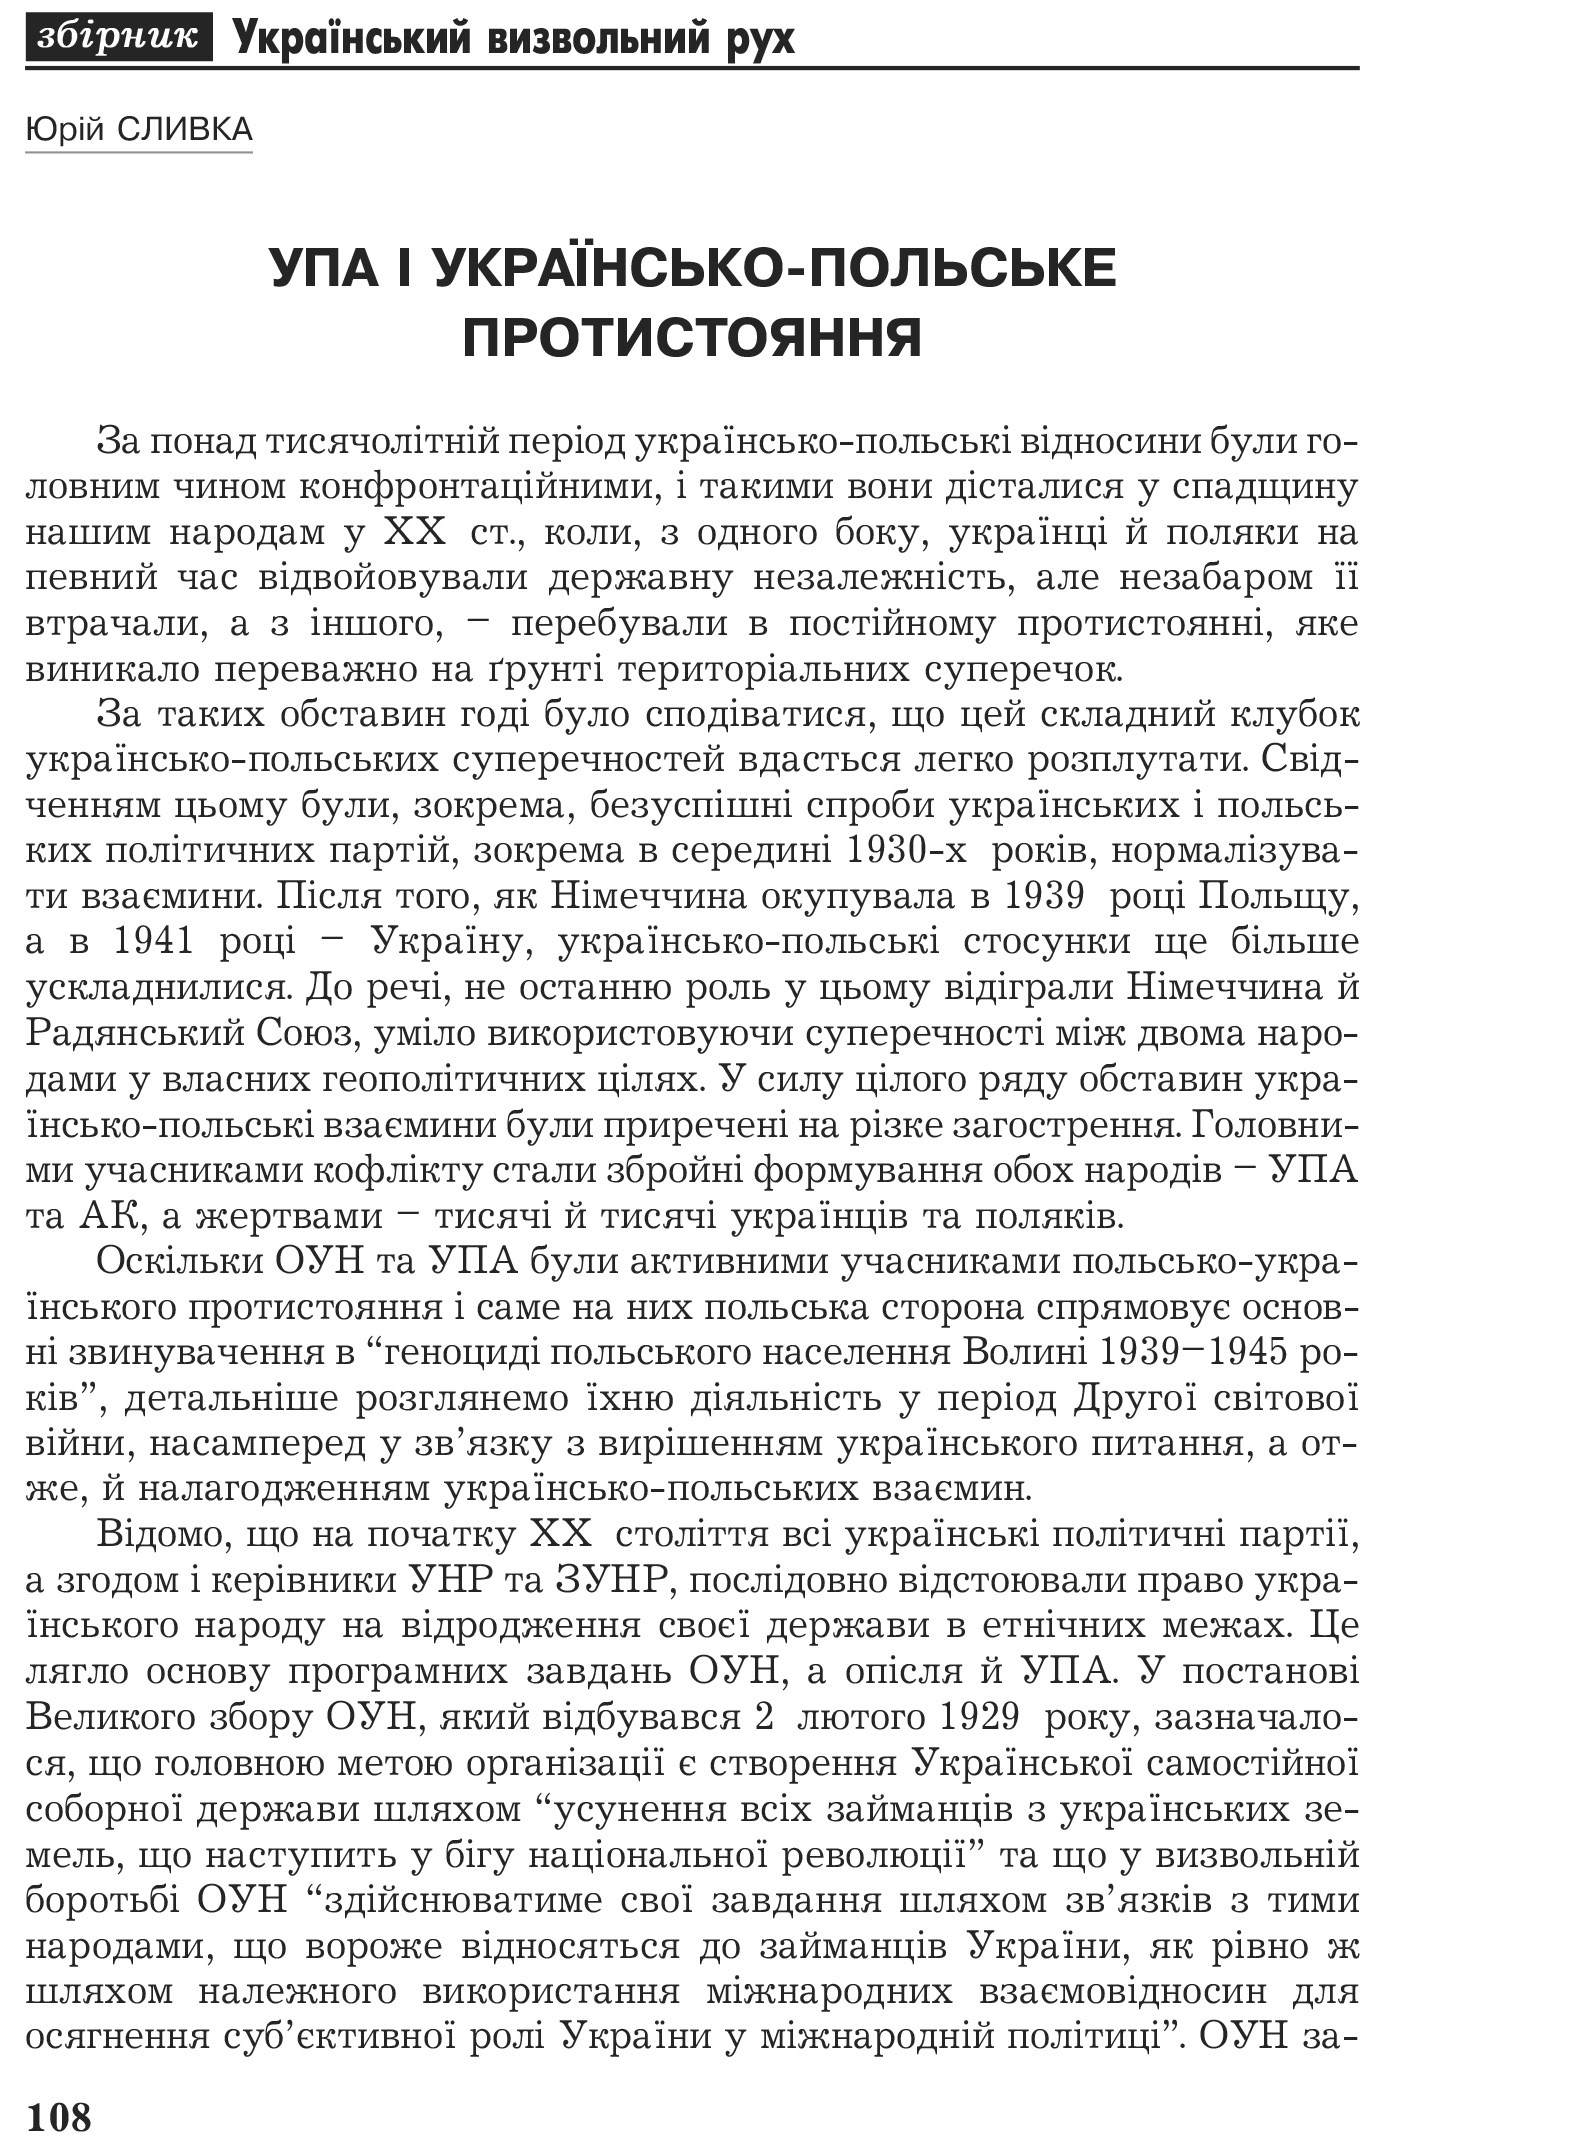 Український визвольний рух №2, ст. 108 - 126